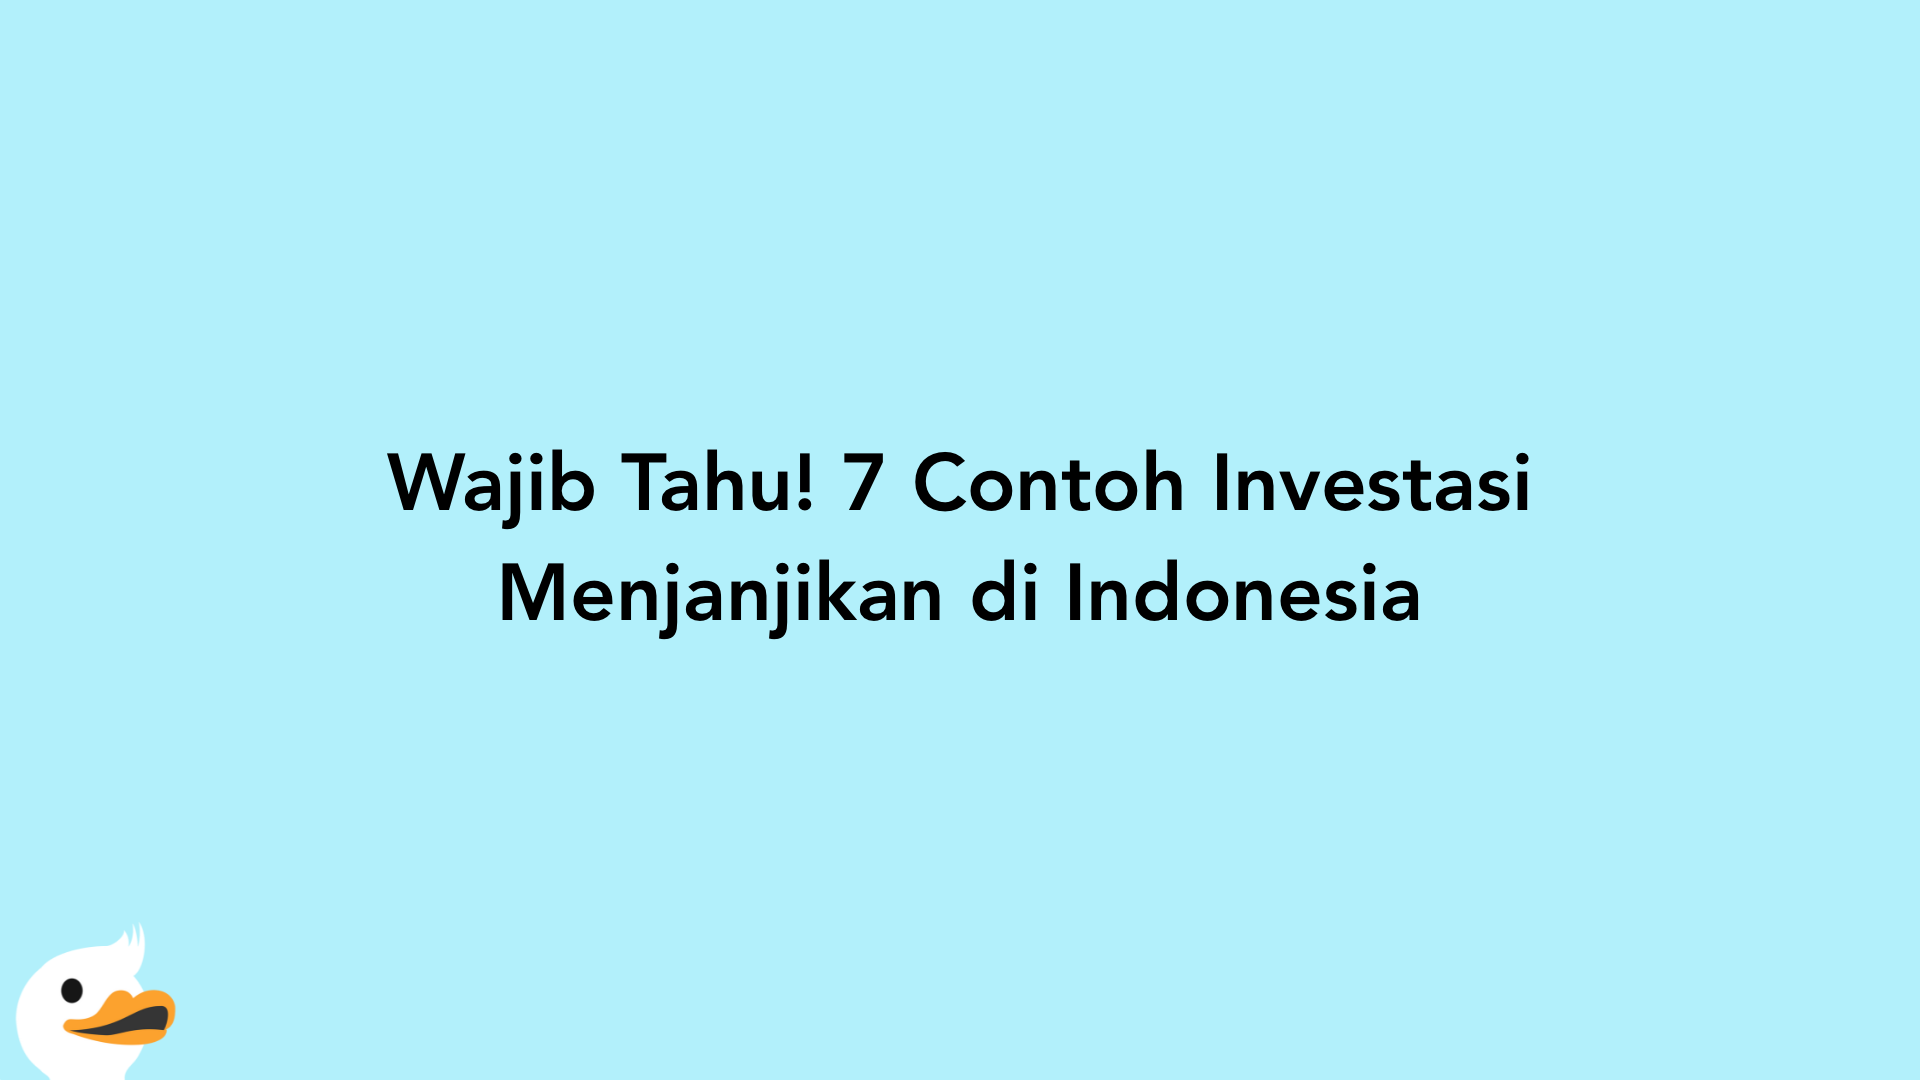 Wajib Tahu! 7 Contoh Investasi Menjanjikan di Indonesia